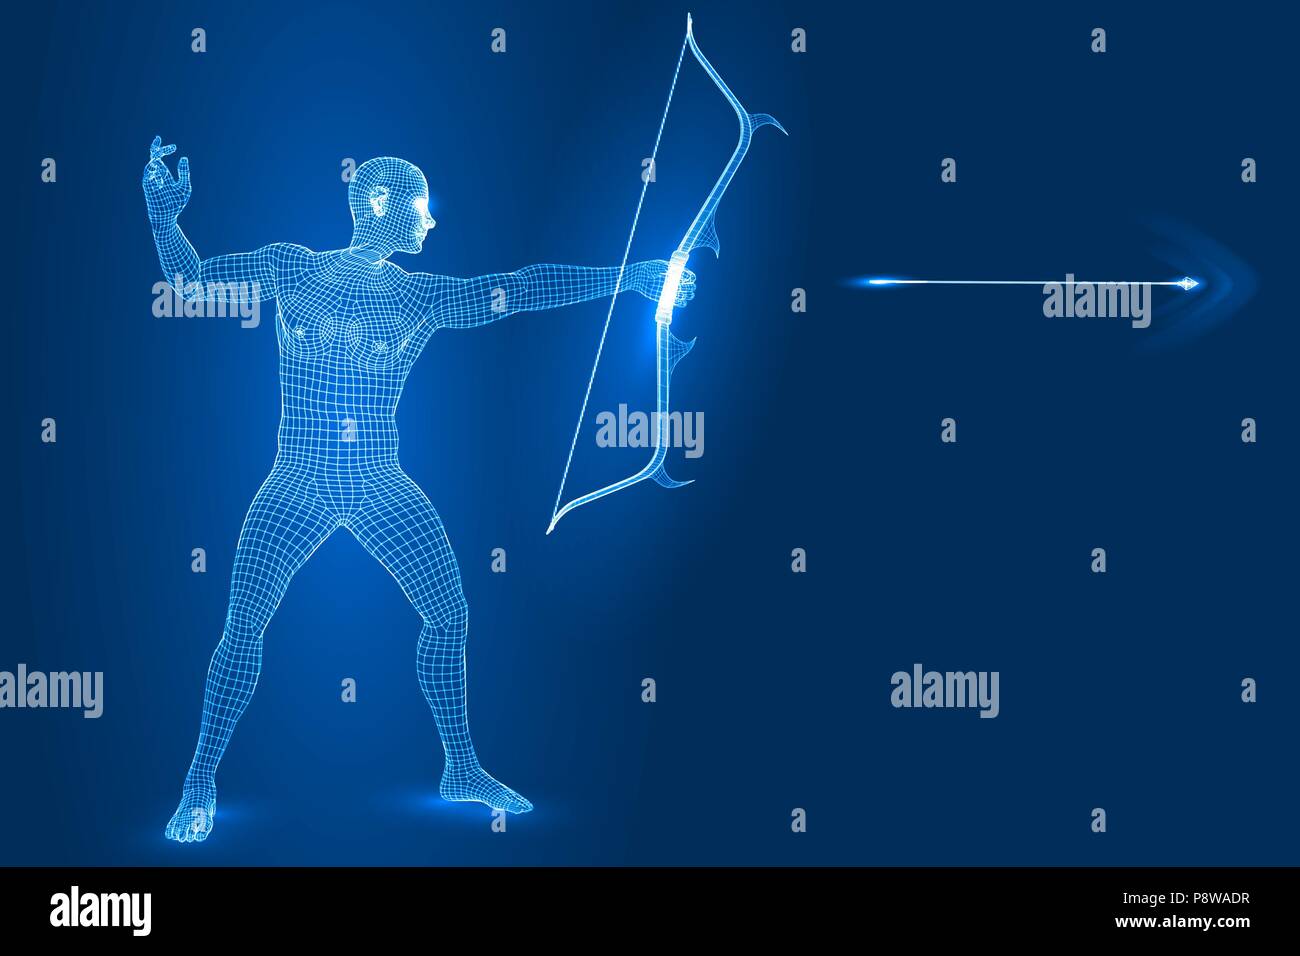 Uomo digitale figura come archer, 3d stile wireframe illustrazione vettoriale. Illustrazione Vettoriale